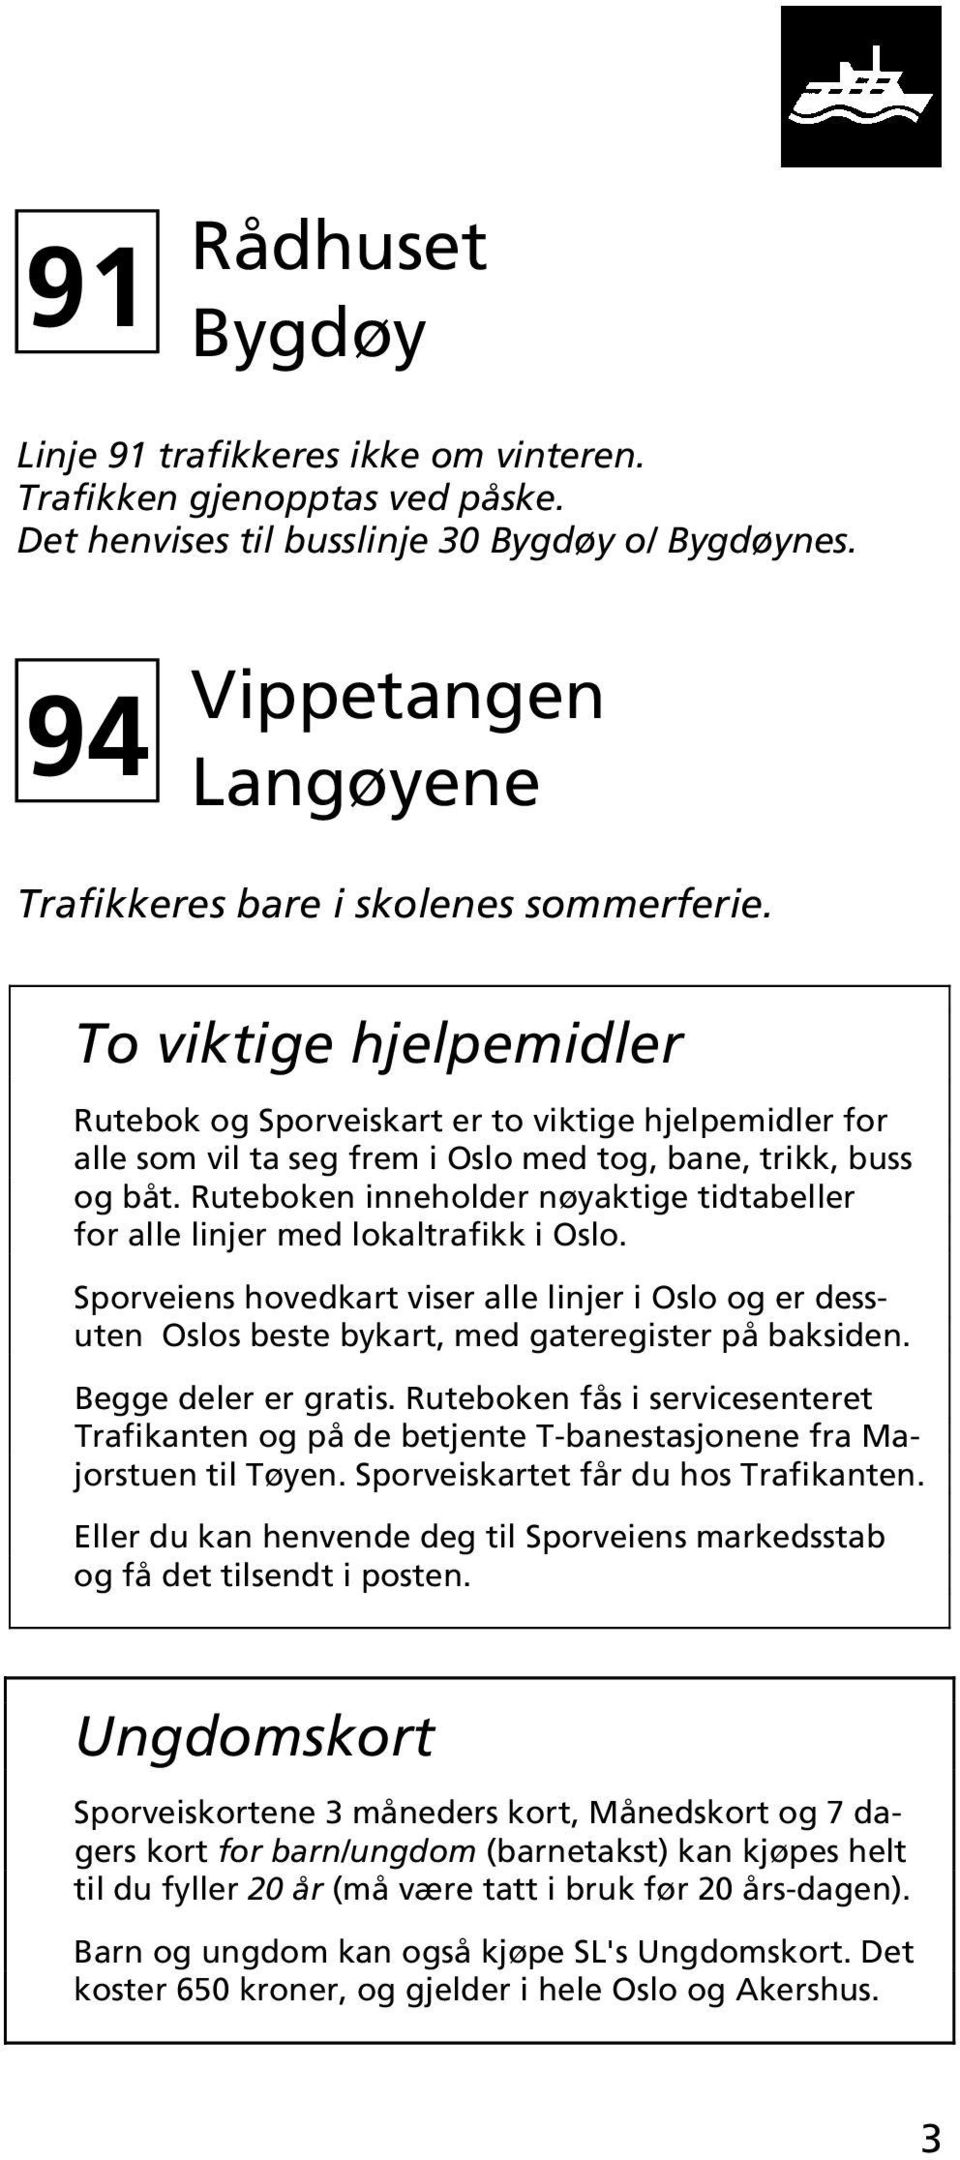 Ruteboken inneholder nøyaktige tidtabeller for alle linjer med lokaltrafikk i Oslo. Sporveiens hovedkart viser alle linjer i Oslo og er dessuten Oslos beste bykart, med gateregister på baksiden.